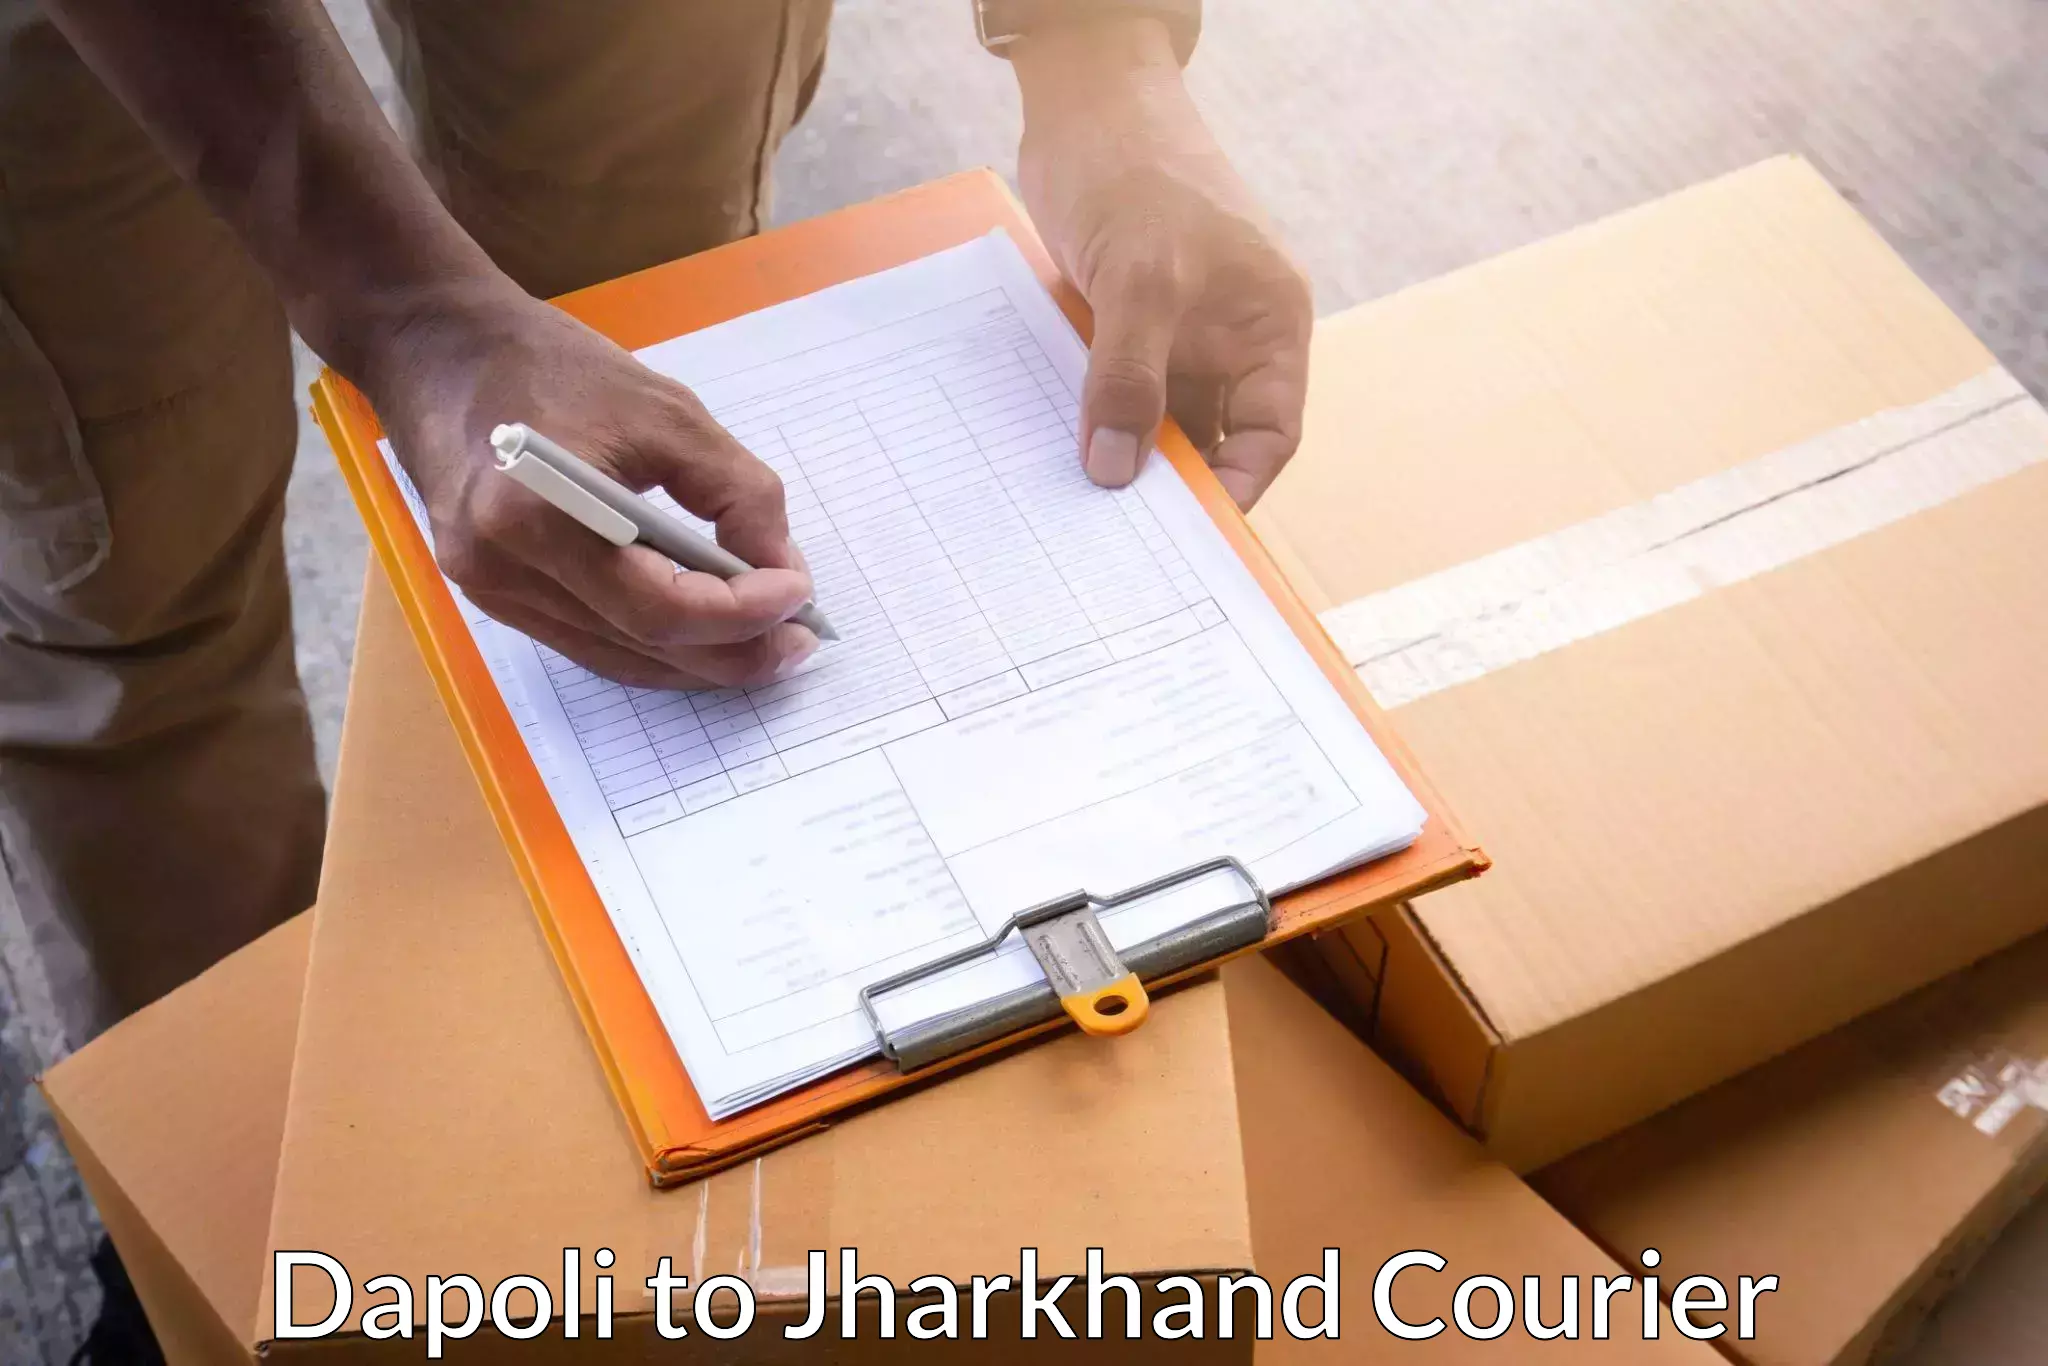 Secure packaging Dapoli to Jamshedpur